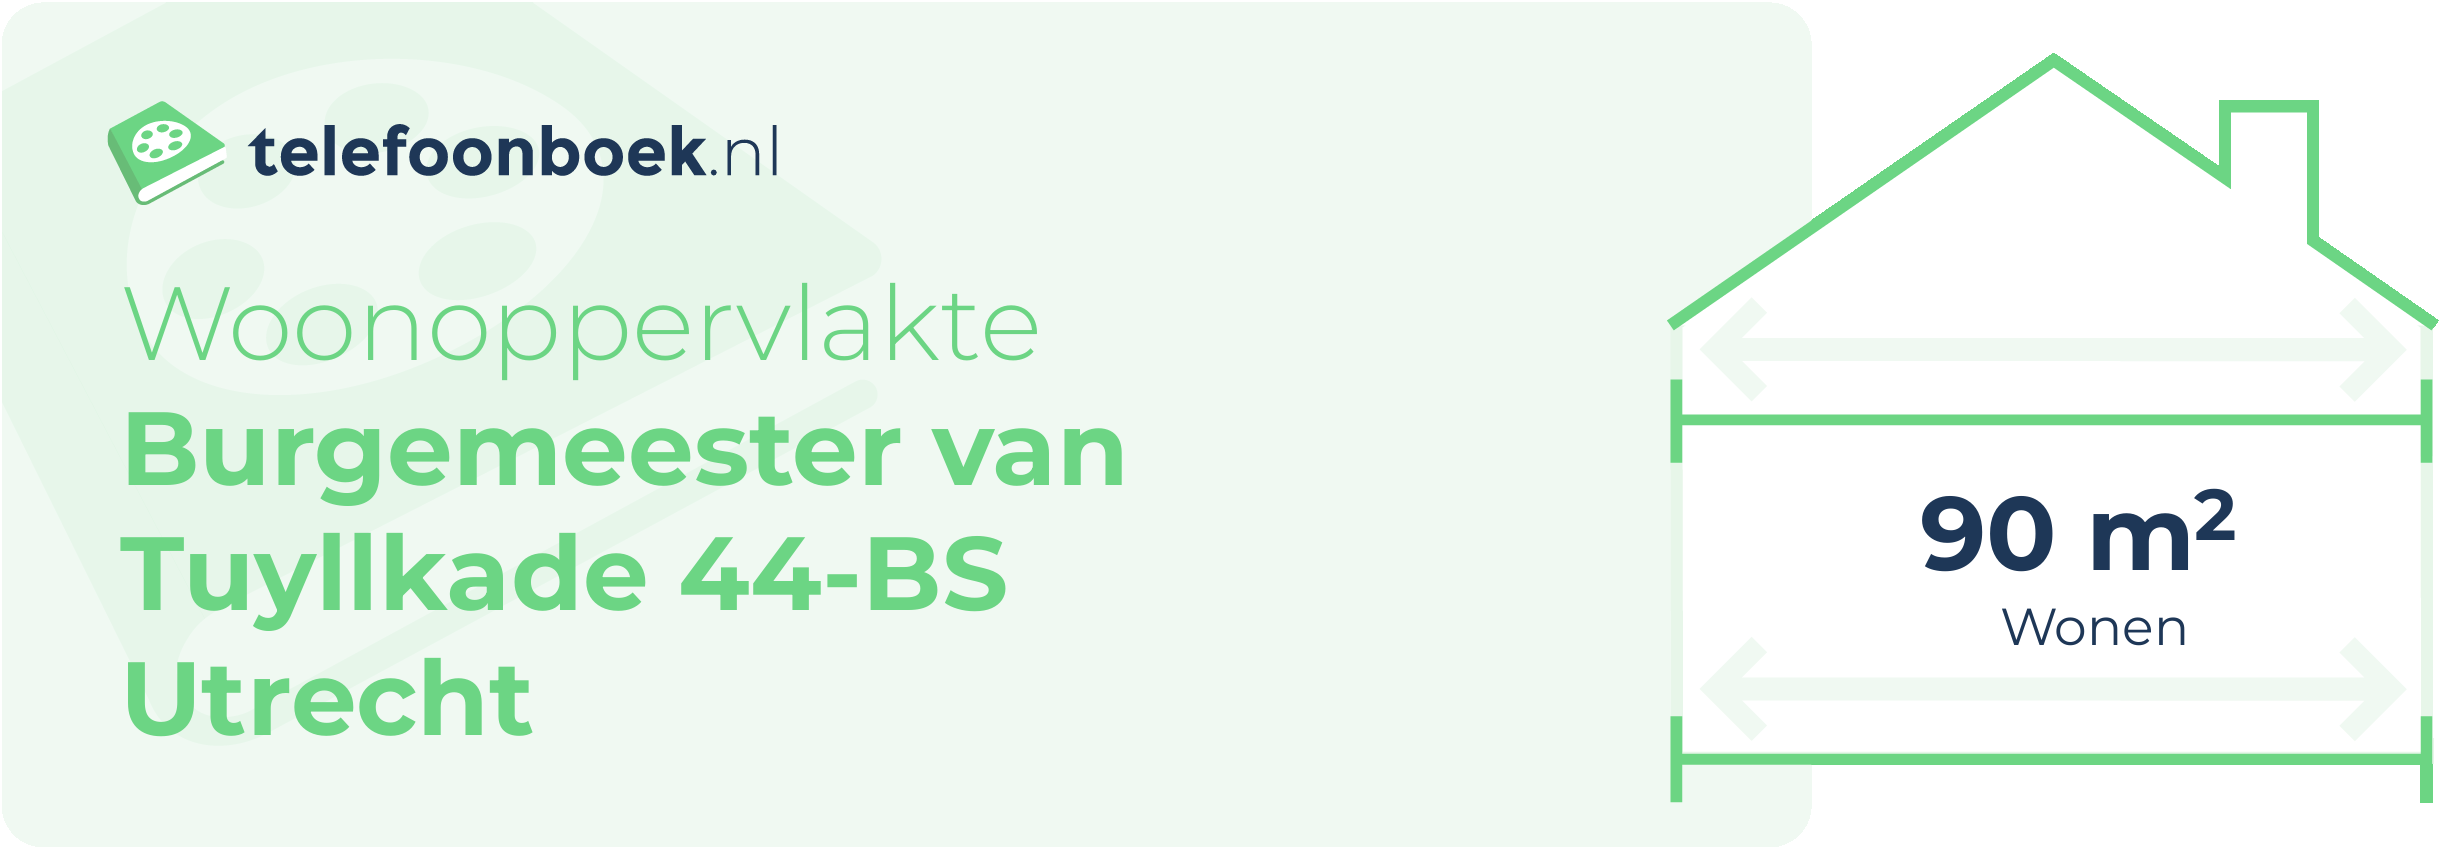 Woonoppervlakte Burgemeester Van Tuyllkade 44-BS Utrecht